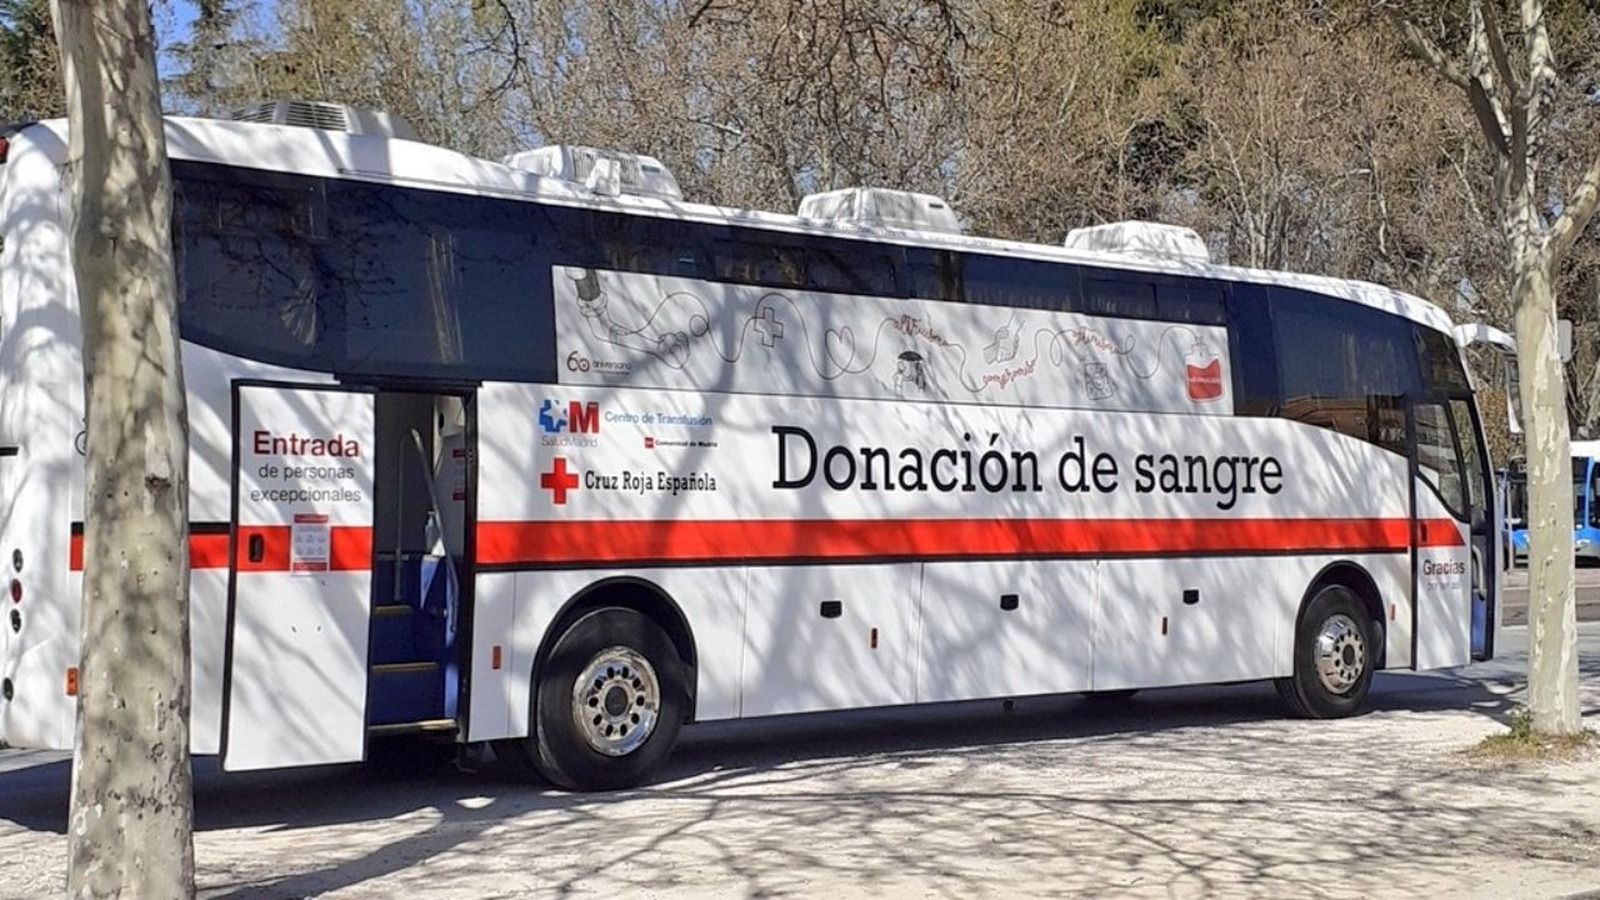 430 vecinos de Pozuelo han donado sangre a Cruz Roja en lo que va de año